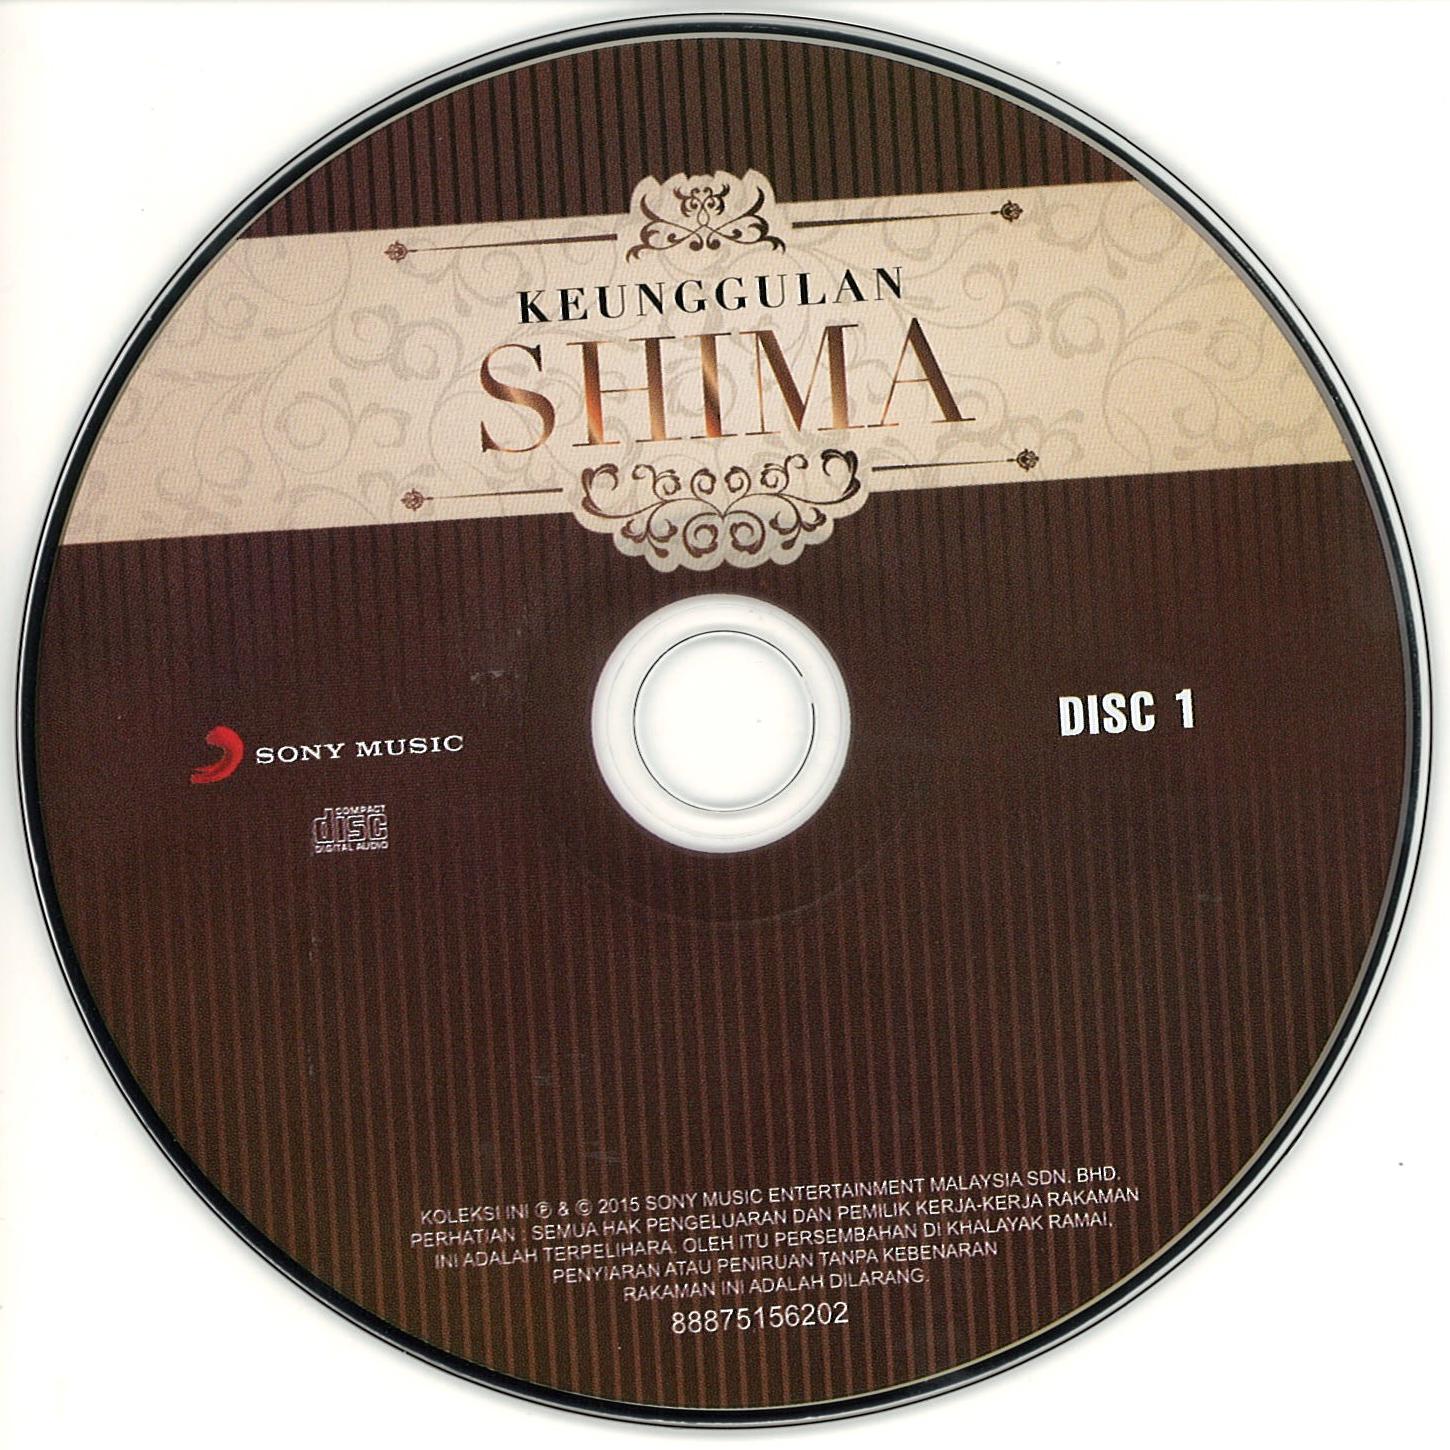 SHIMA: THE BEST SINGER EVER BORN: DISCOGRAPHY (COMPILATION): KEUNGGULAN